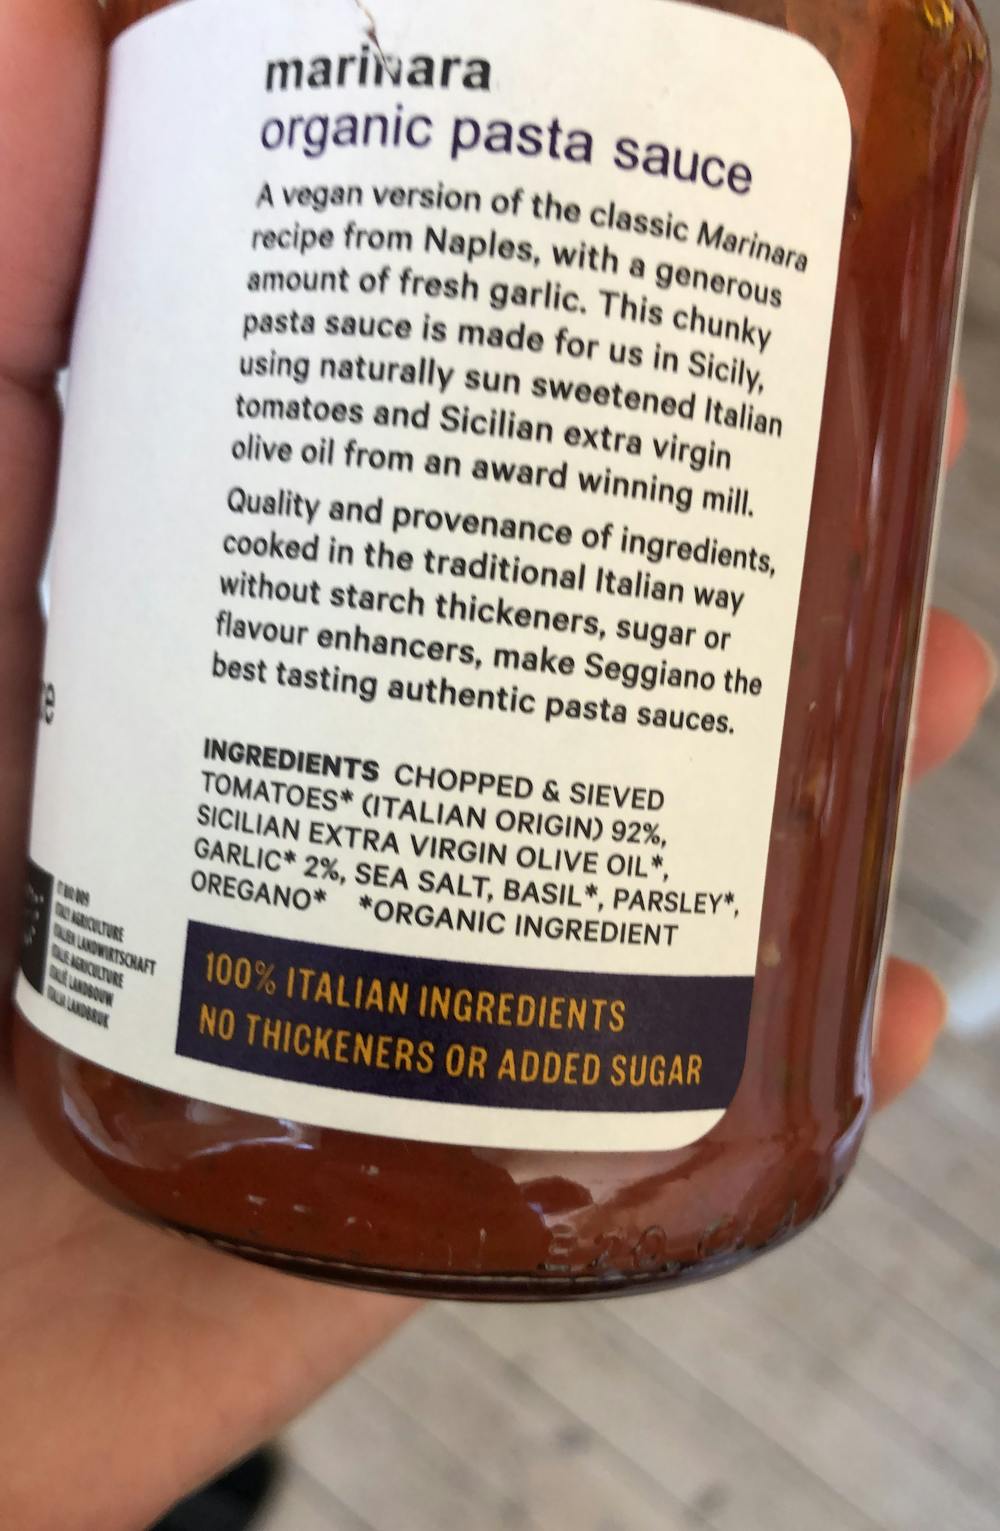 Ingredienslisten til Marinara garlic, organic pasta sauce, Seggiano